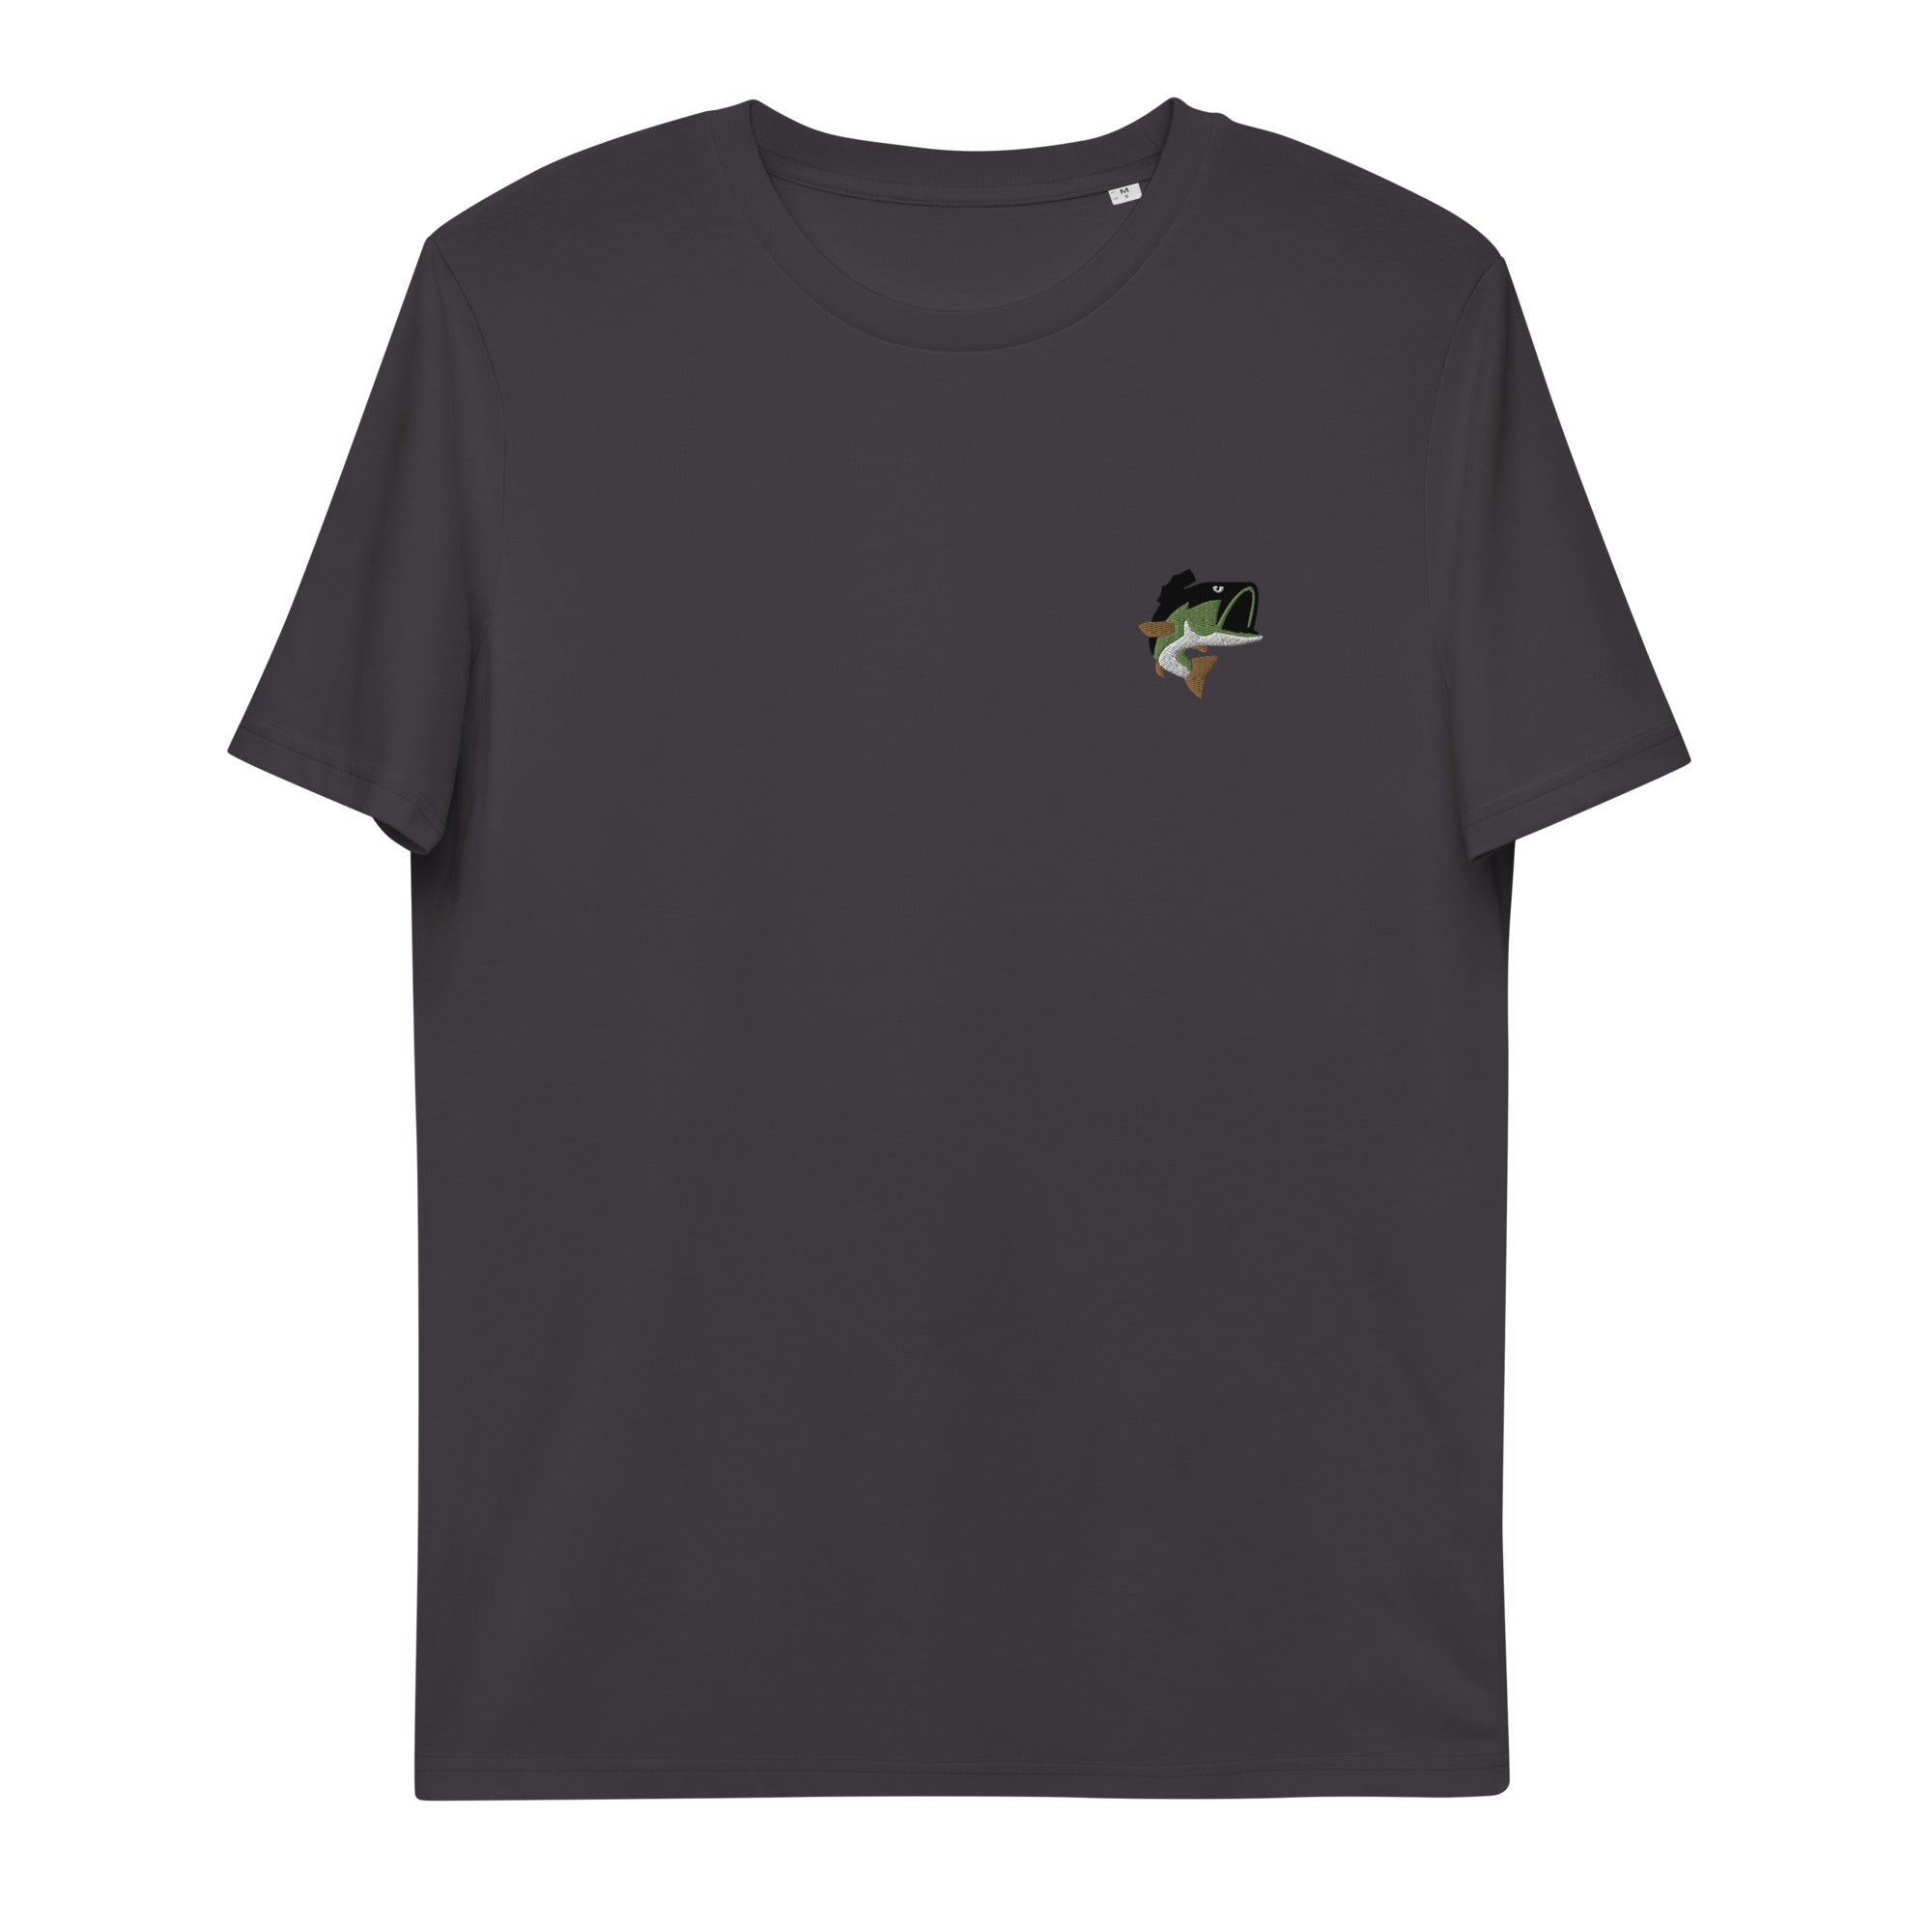 Left Swoosh Bass T-shirt - Oddhook